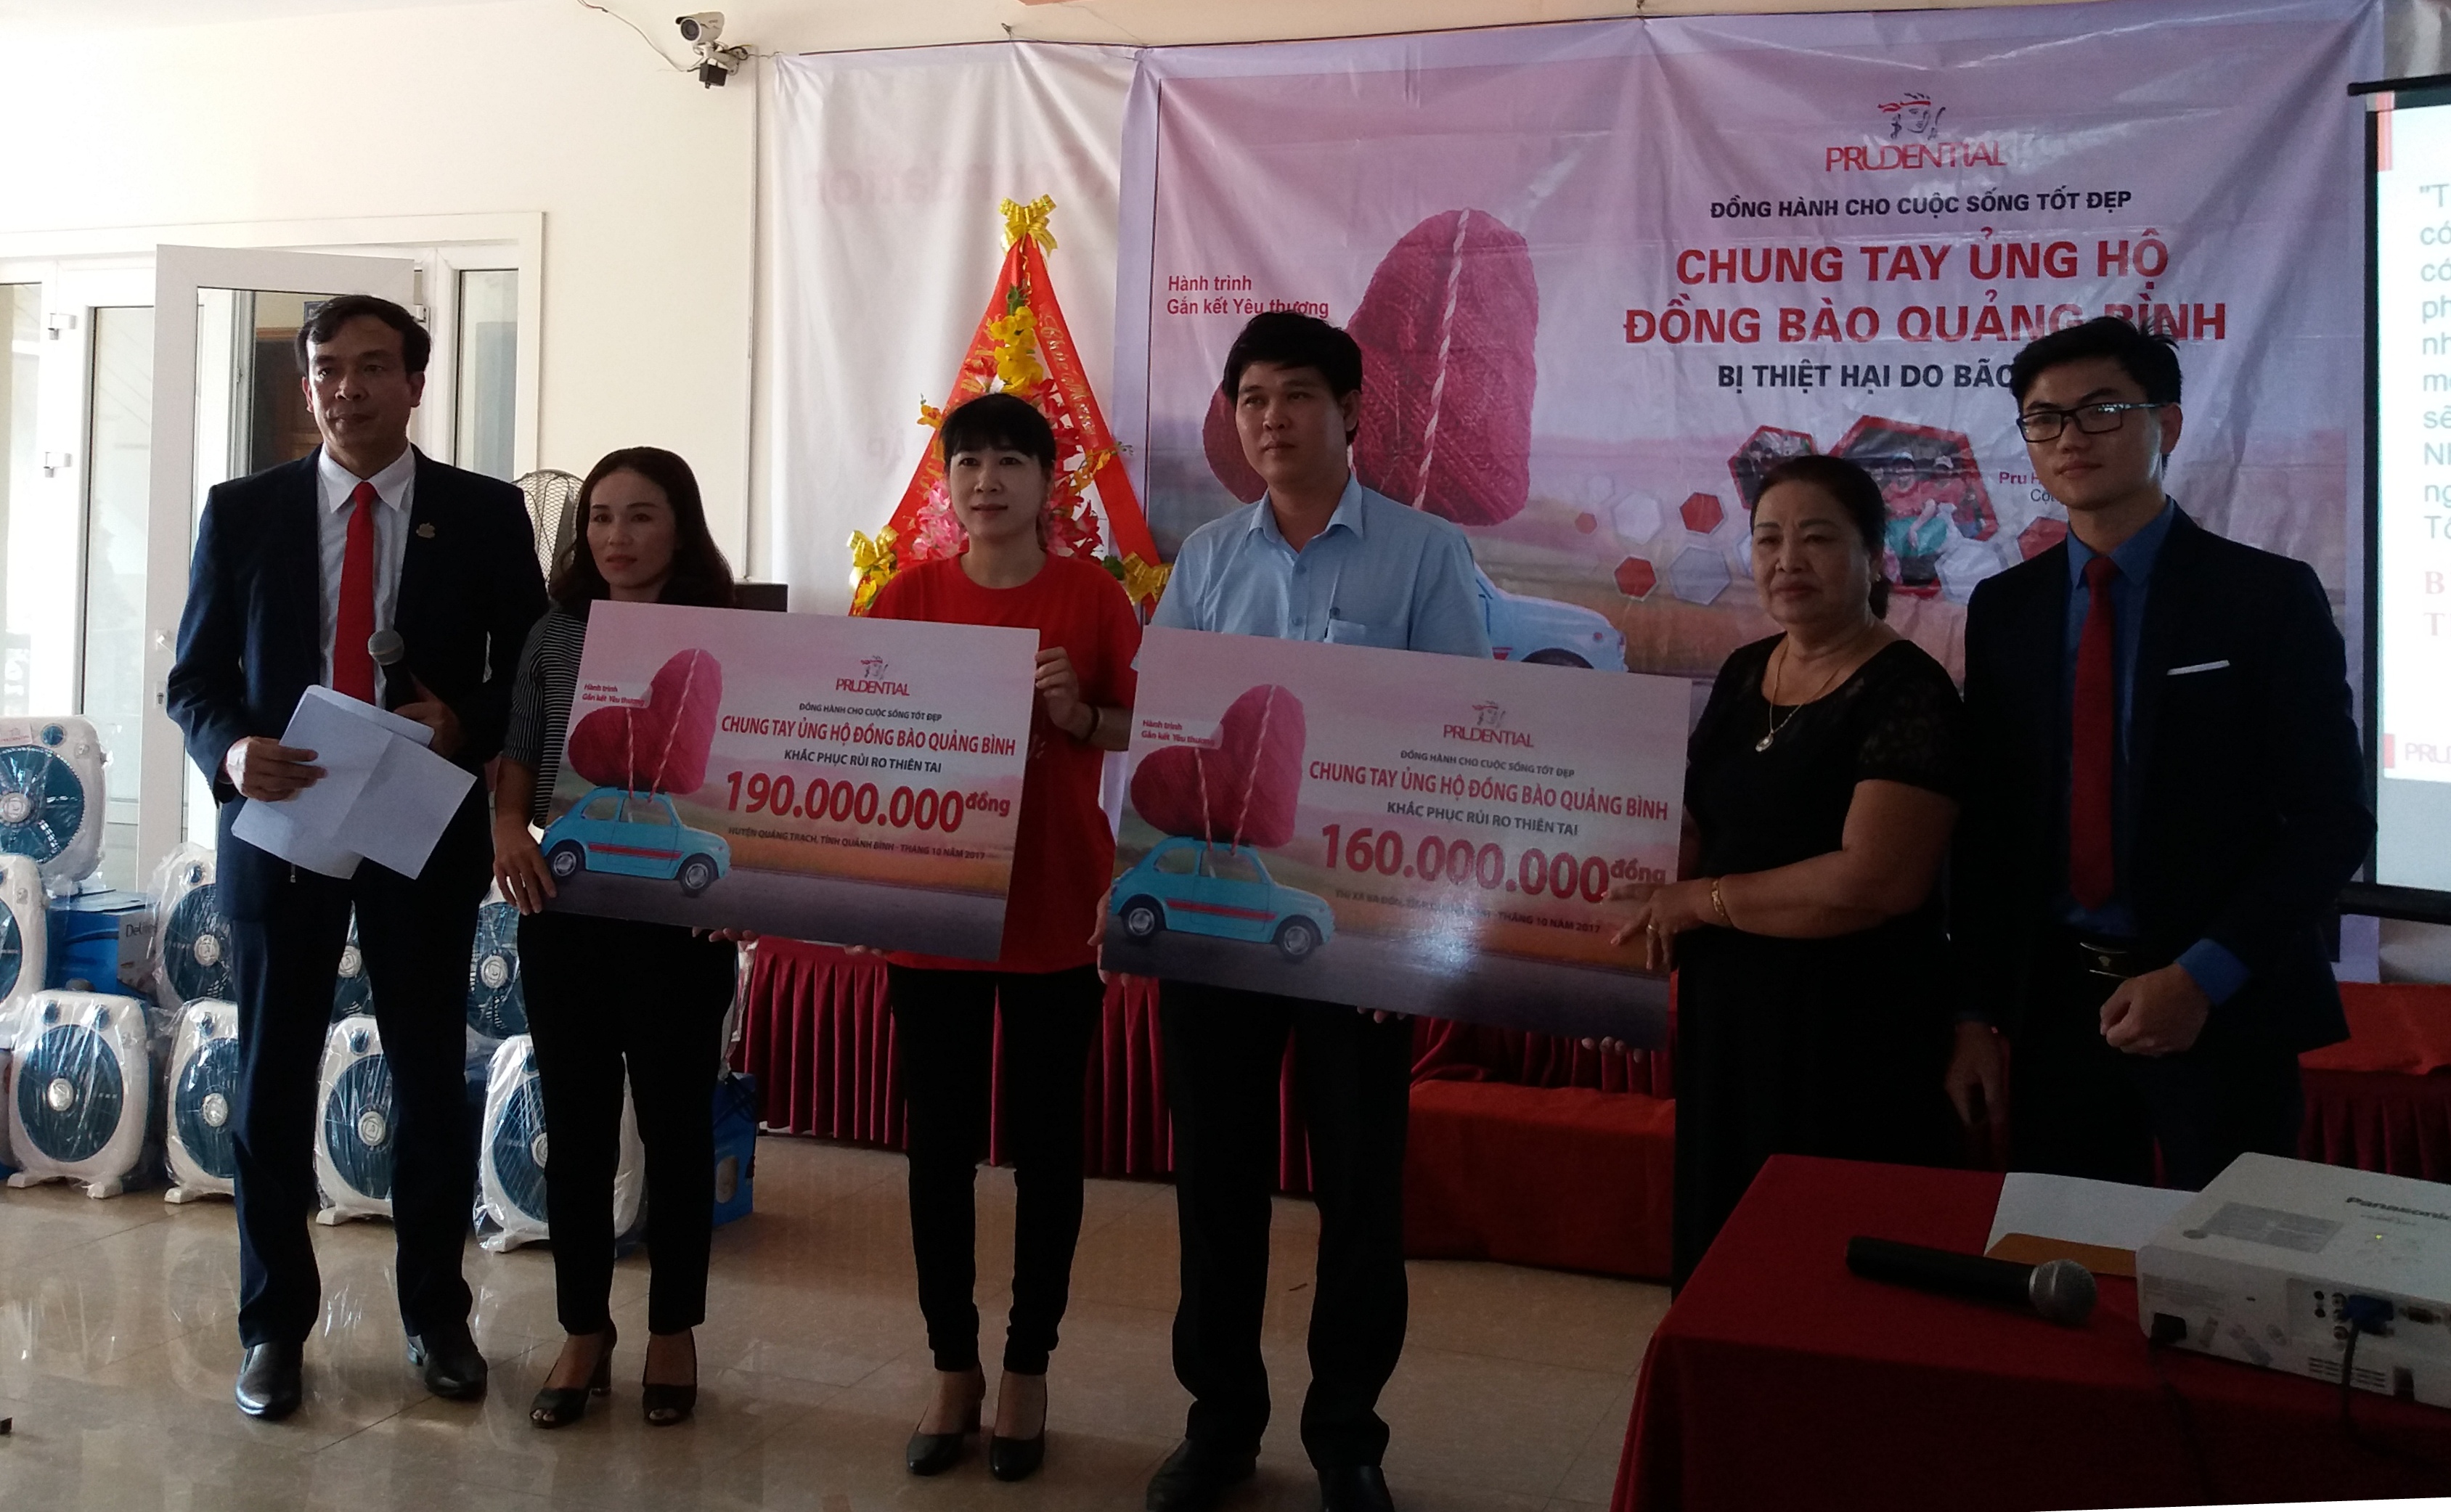  Đại diện Công ty BHNT Prudential trao tượng trưng số tiền hỗ trợ cho Uỷ ban MTTQVN huyện Quảng Trạch và thị xã Ba Đồn